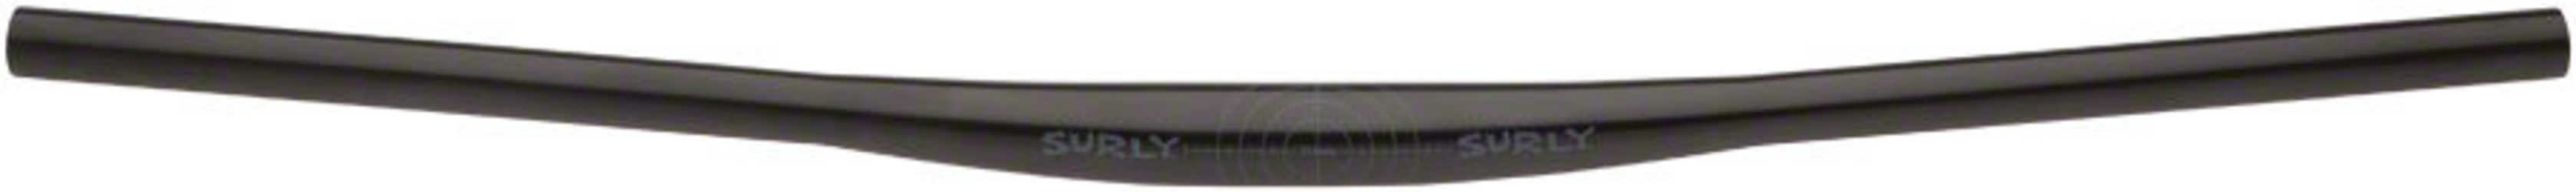 Styre Surly Cheater 31.8 mm 780 mm svart från Surly